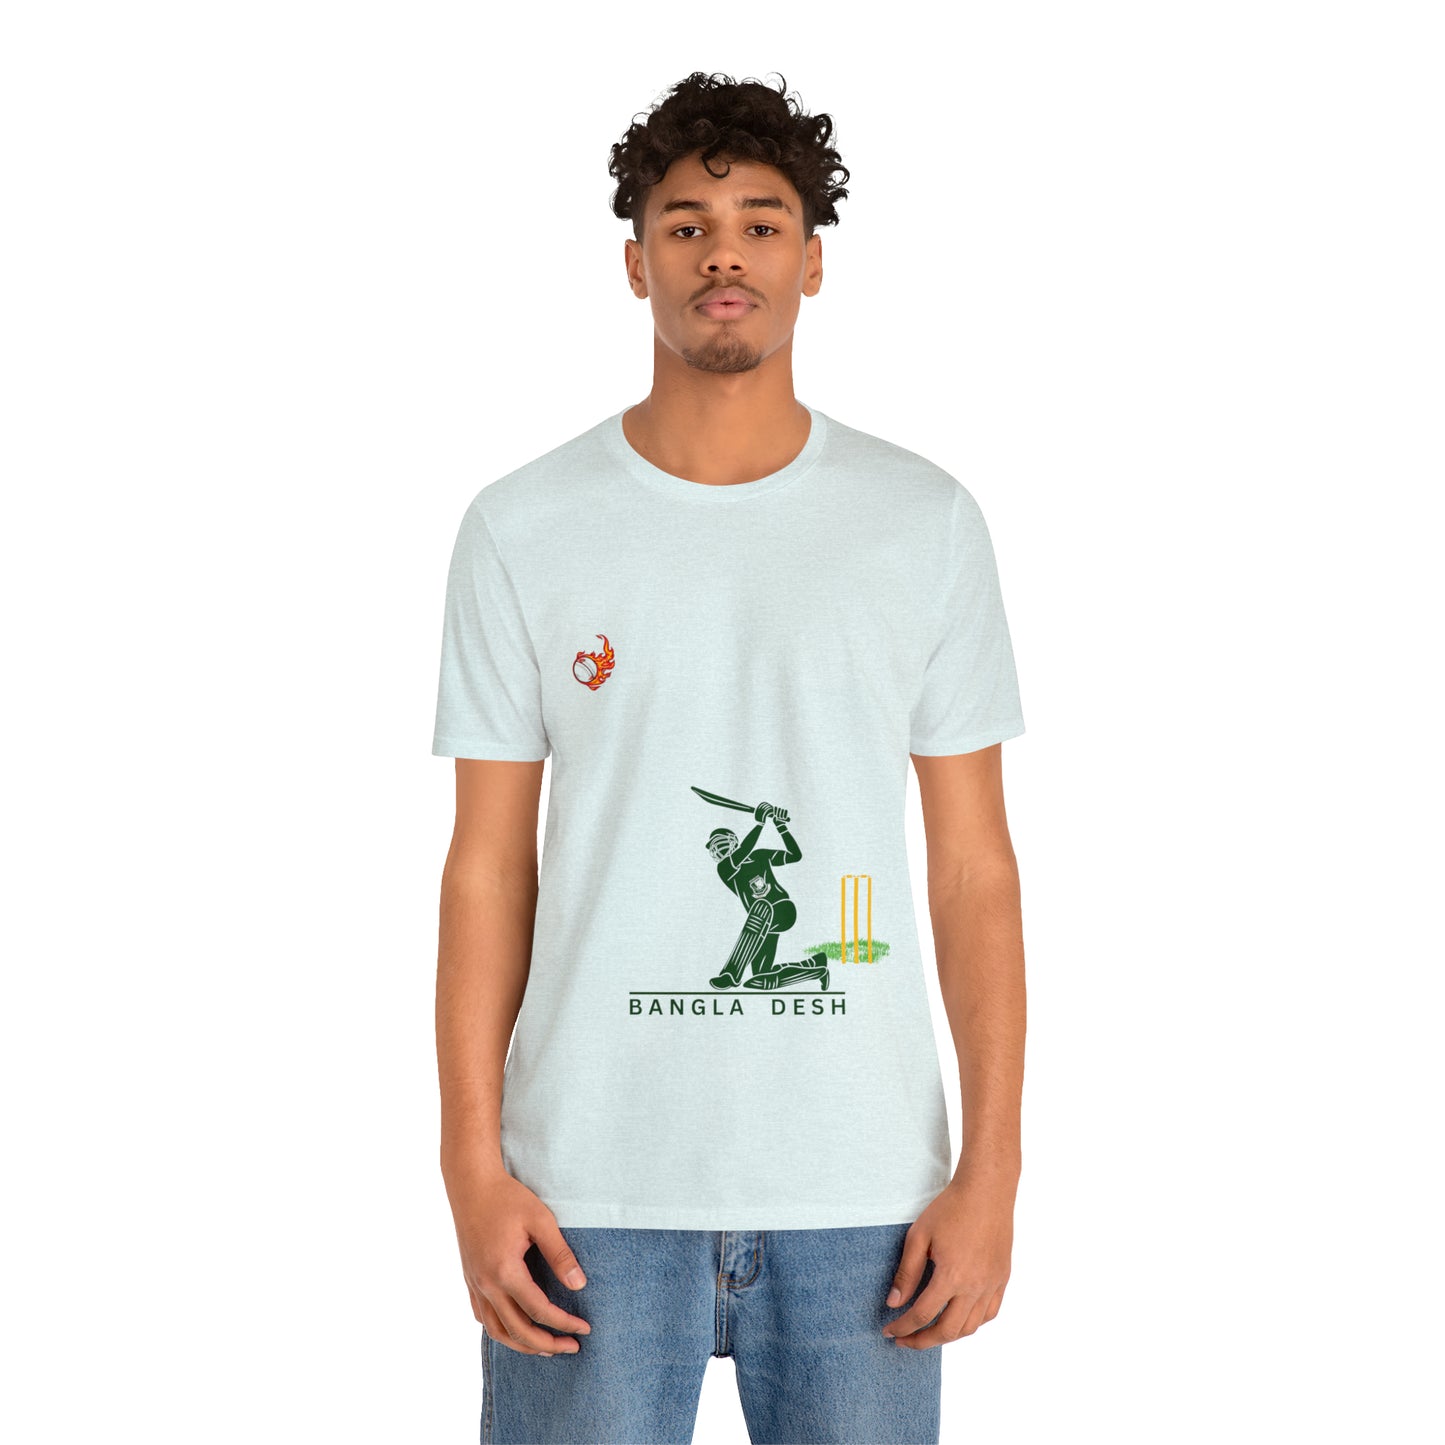 Cricket || Unisex Jersey Short Sleeve Tee